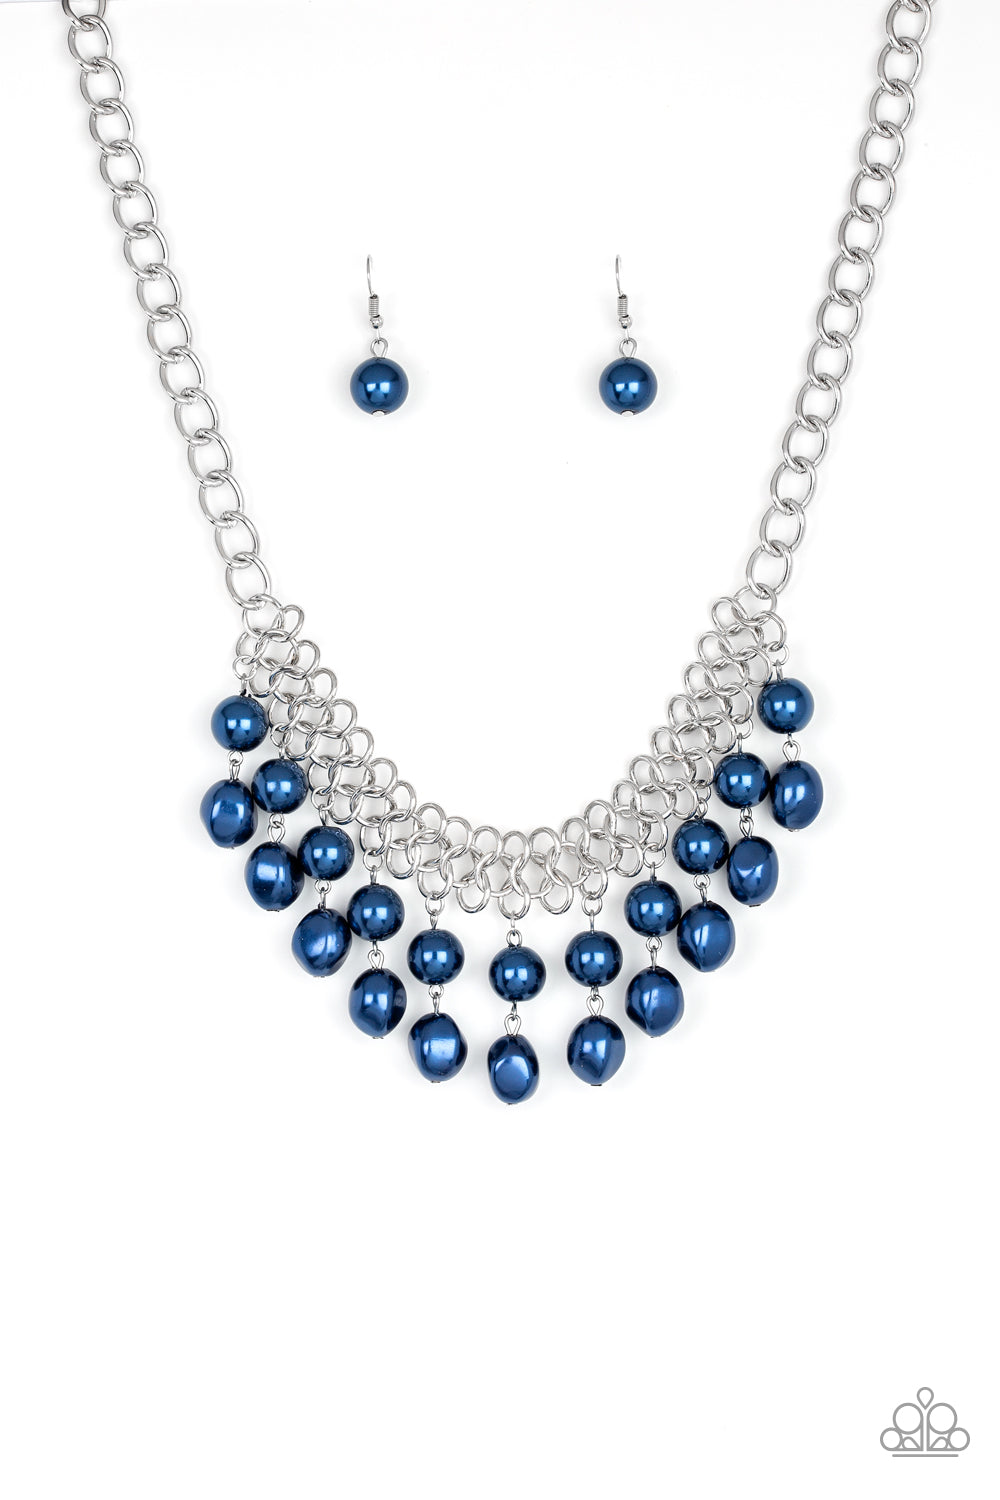 5th Avenue Fleek - Blue Necklace Set - Princess Glam Shop